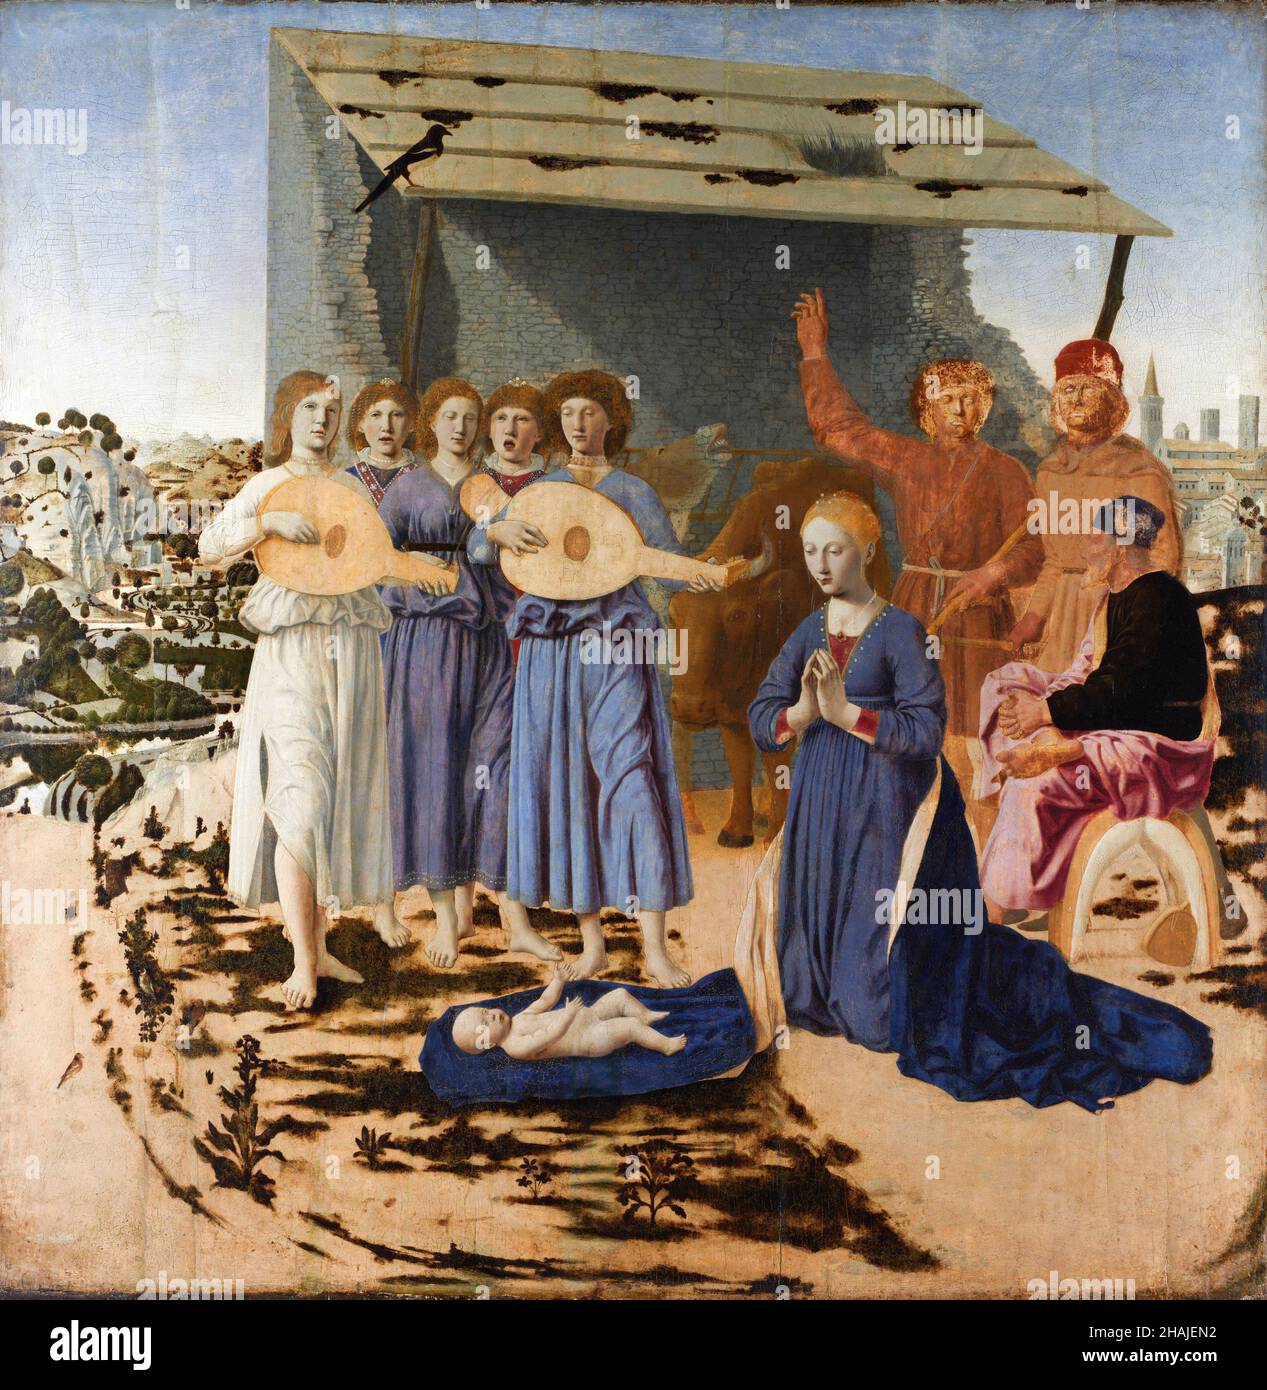 La Nativité de Piero della Francesca, artiste italien du début de la Renaissance (c.1415/20-1492), tempera sur le peuplier, c.1470-75 Banque D'Images